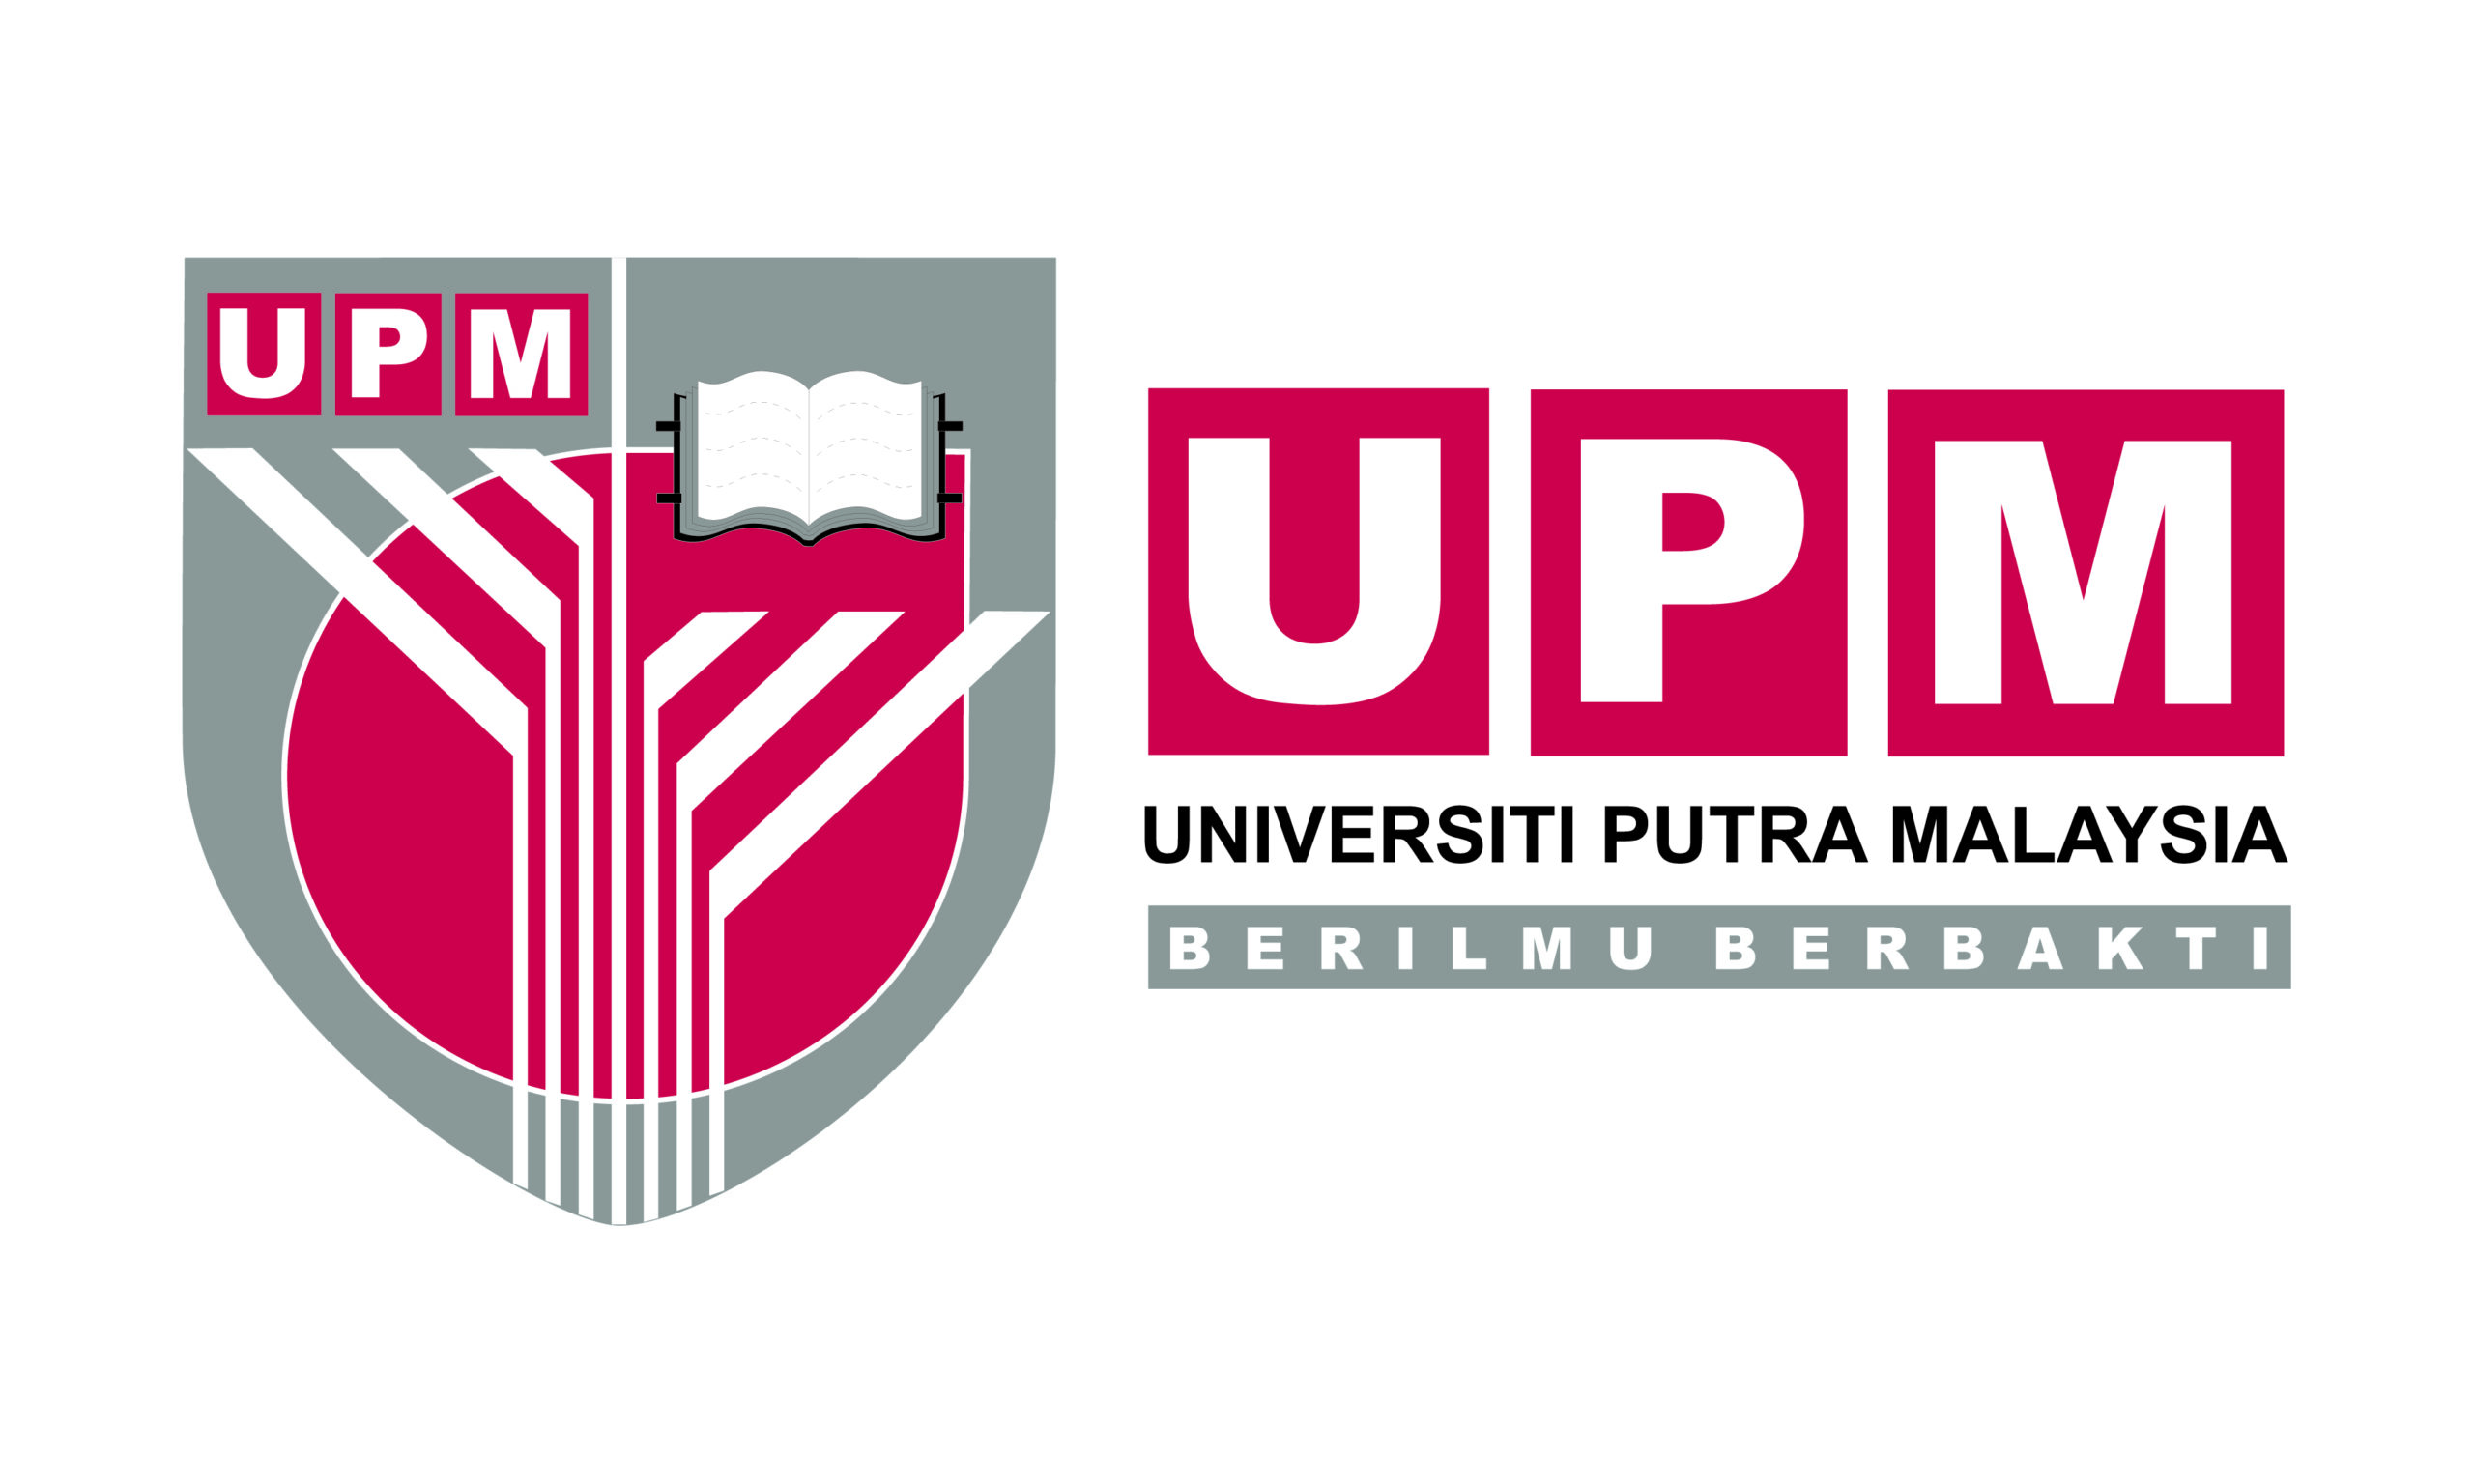 جامعة بوترا الماليزية - University Putra Malaysia (UPM)